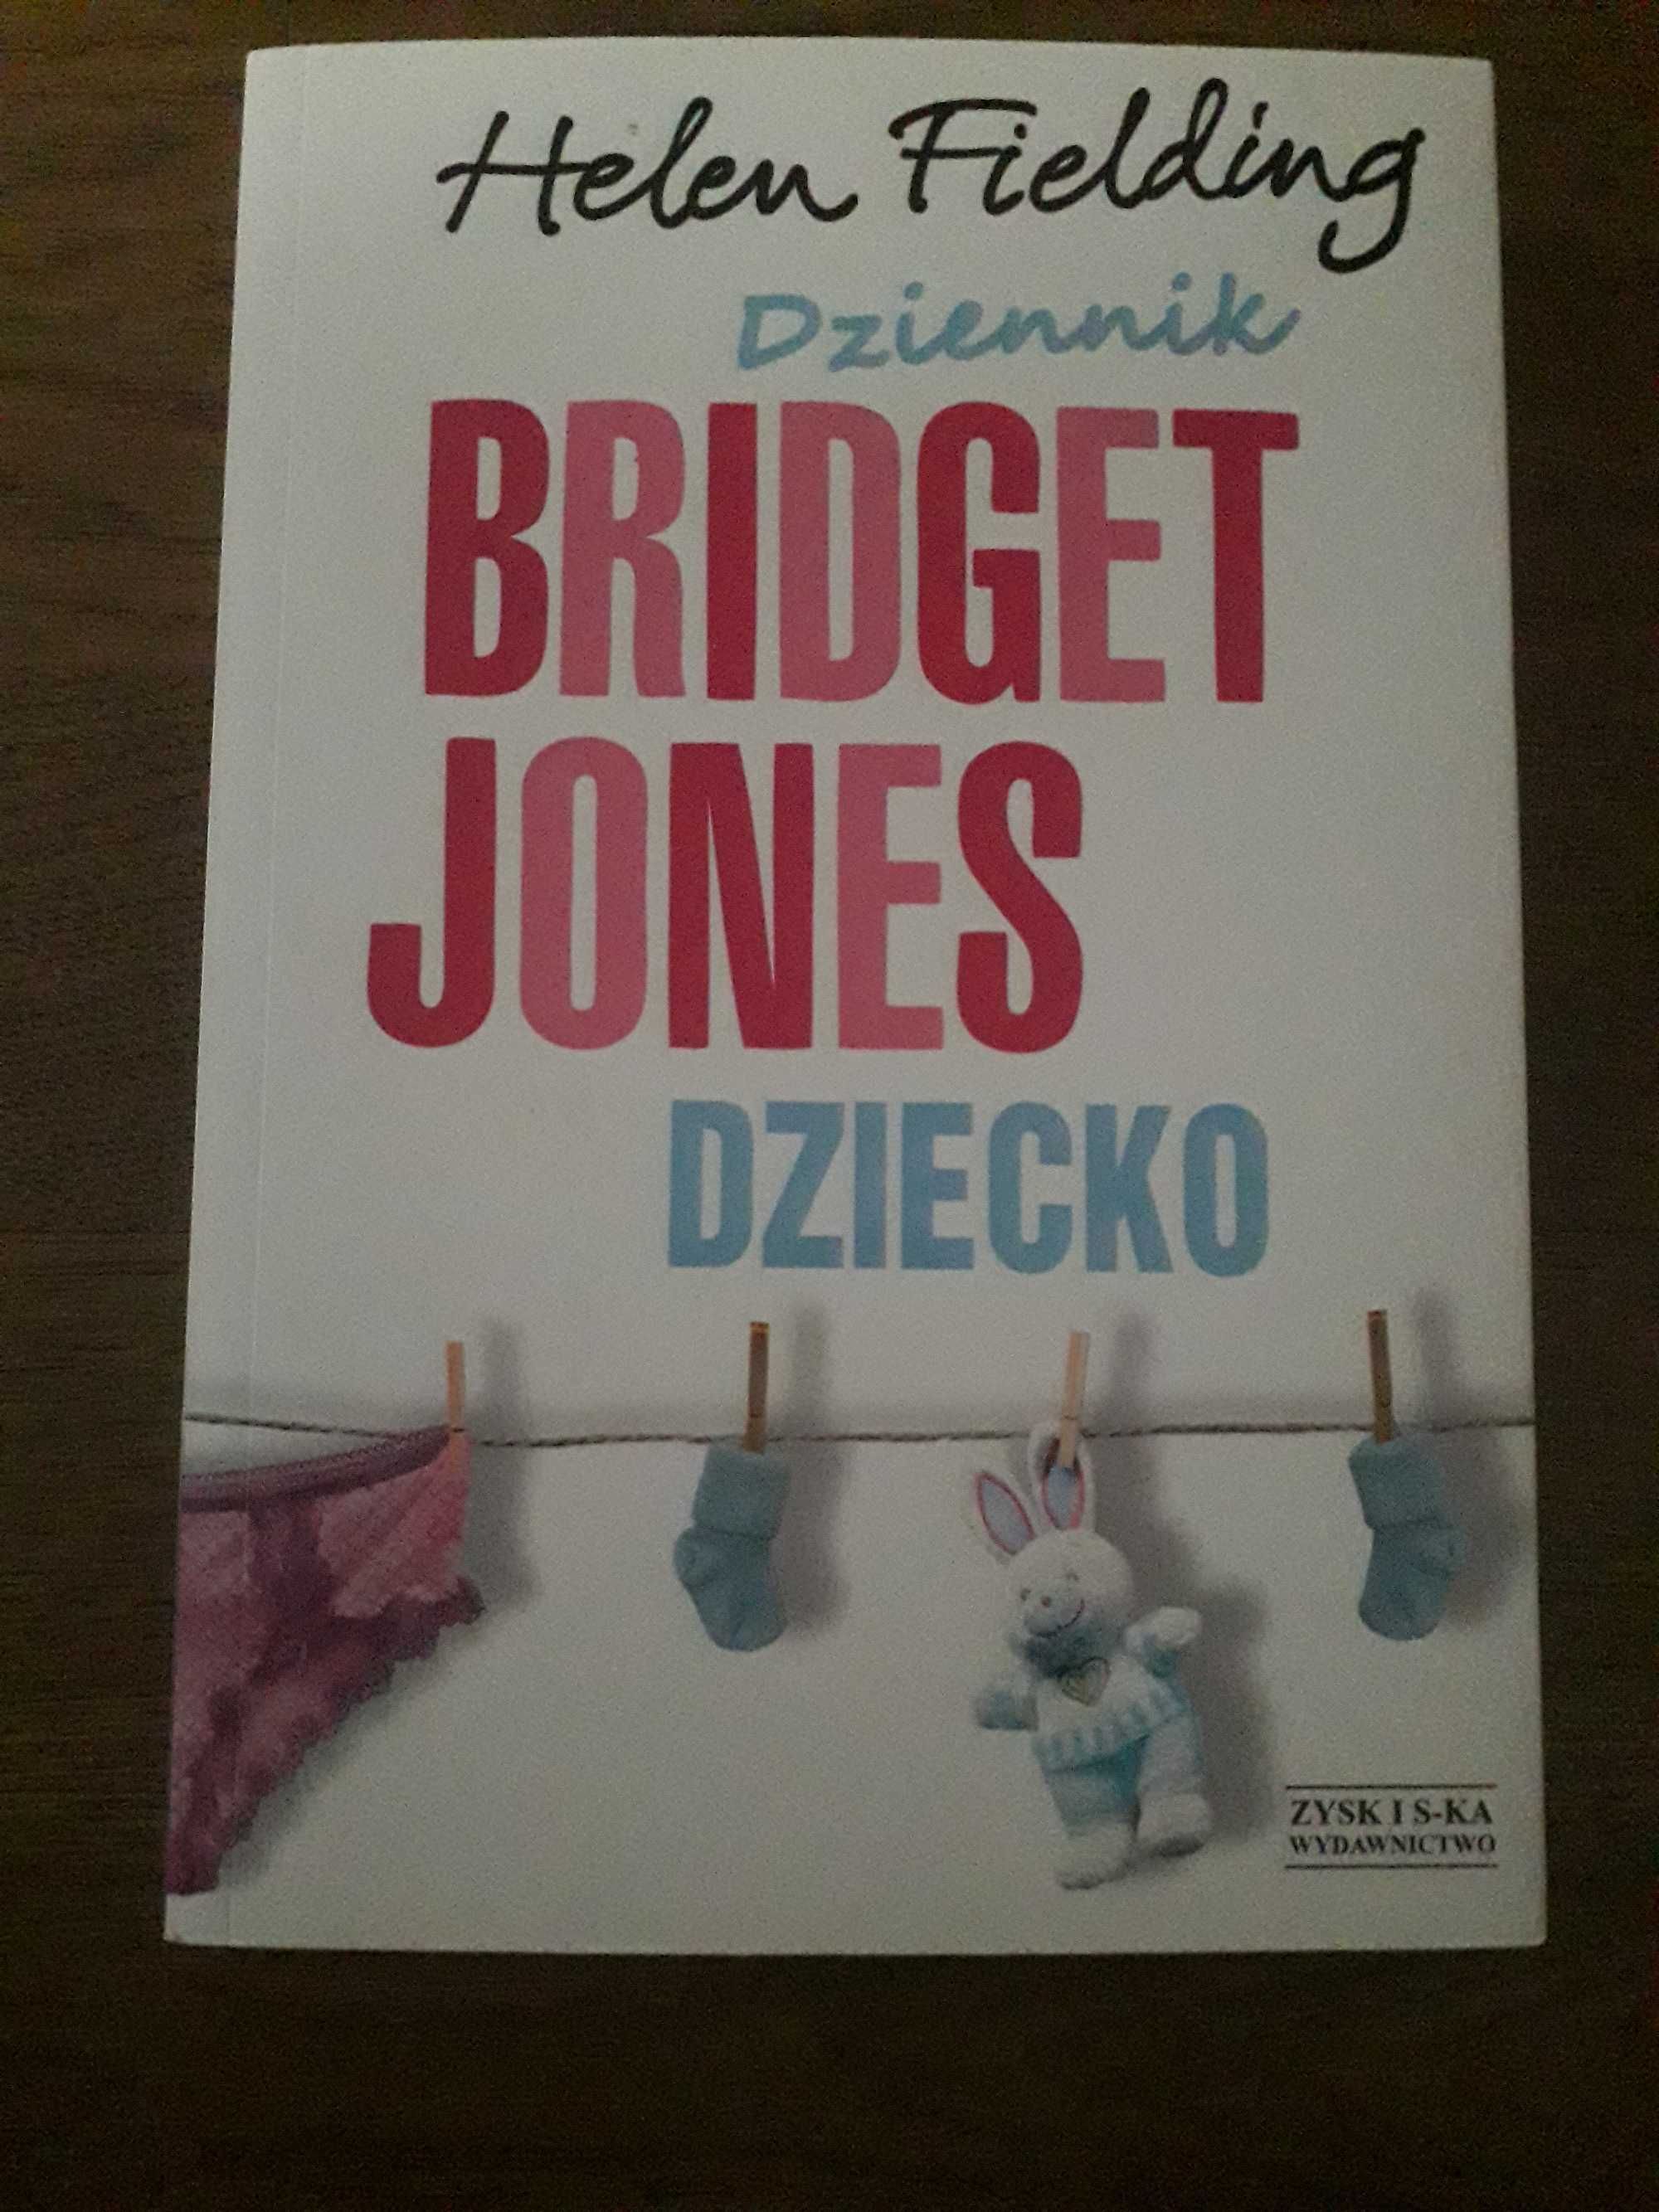 Używana książka Dziennik Bridget Jones Dziecko, wyglada jak nowa